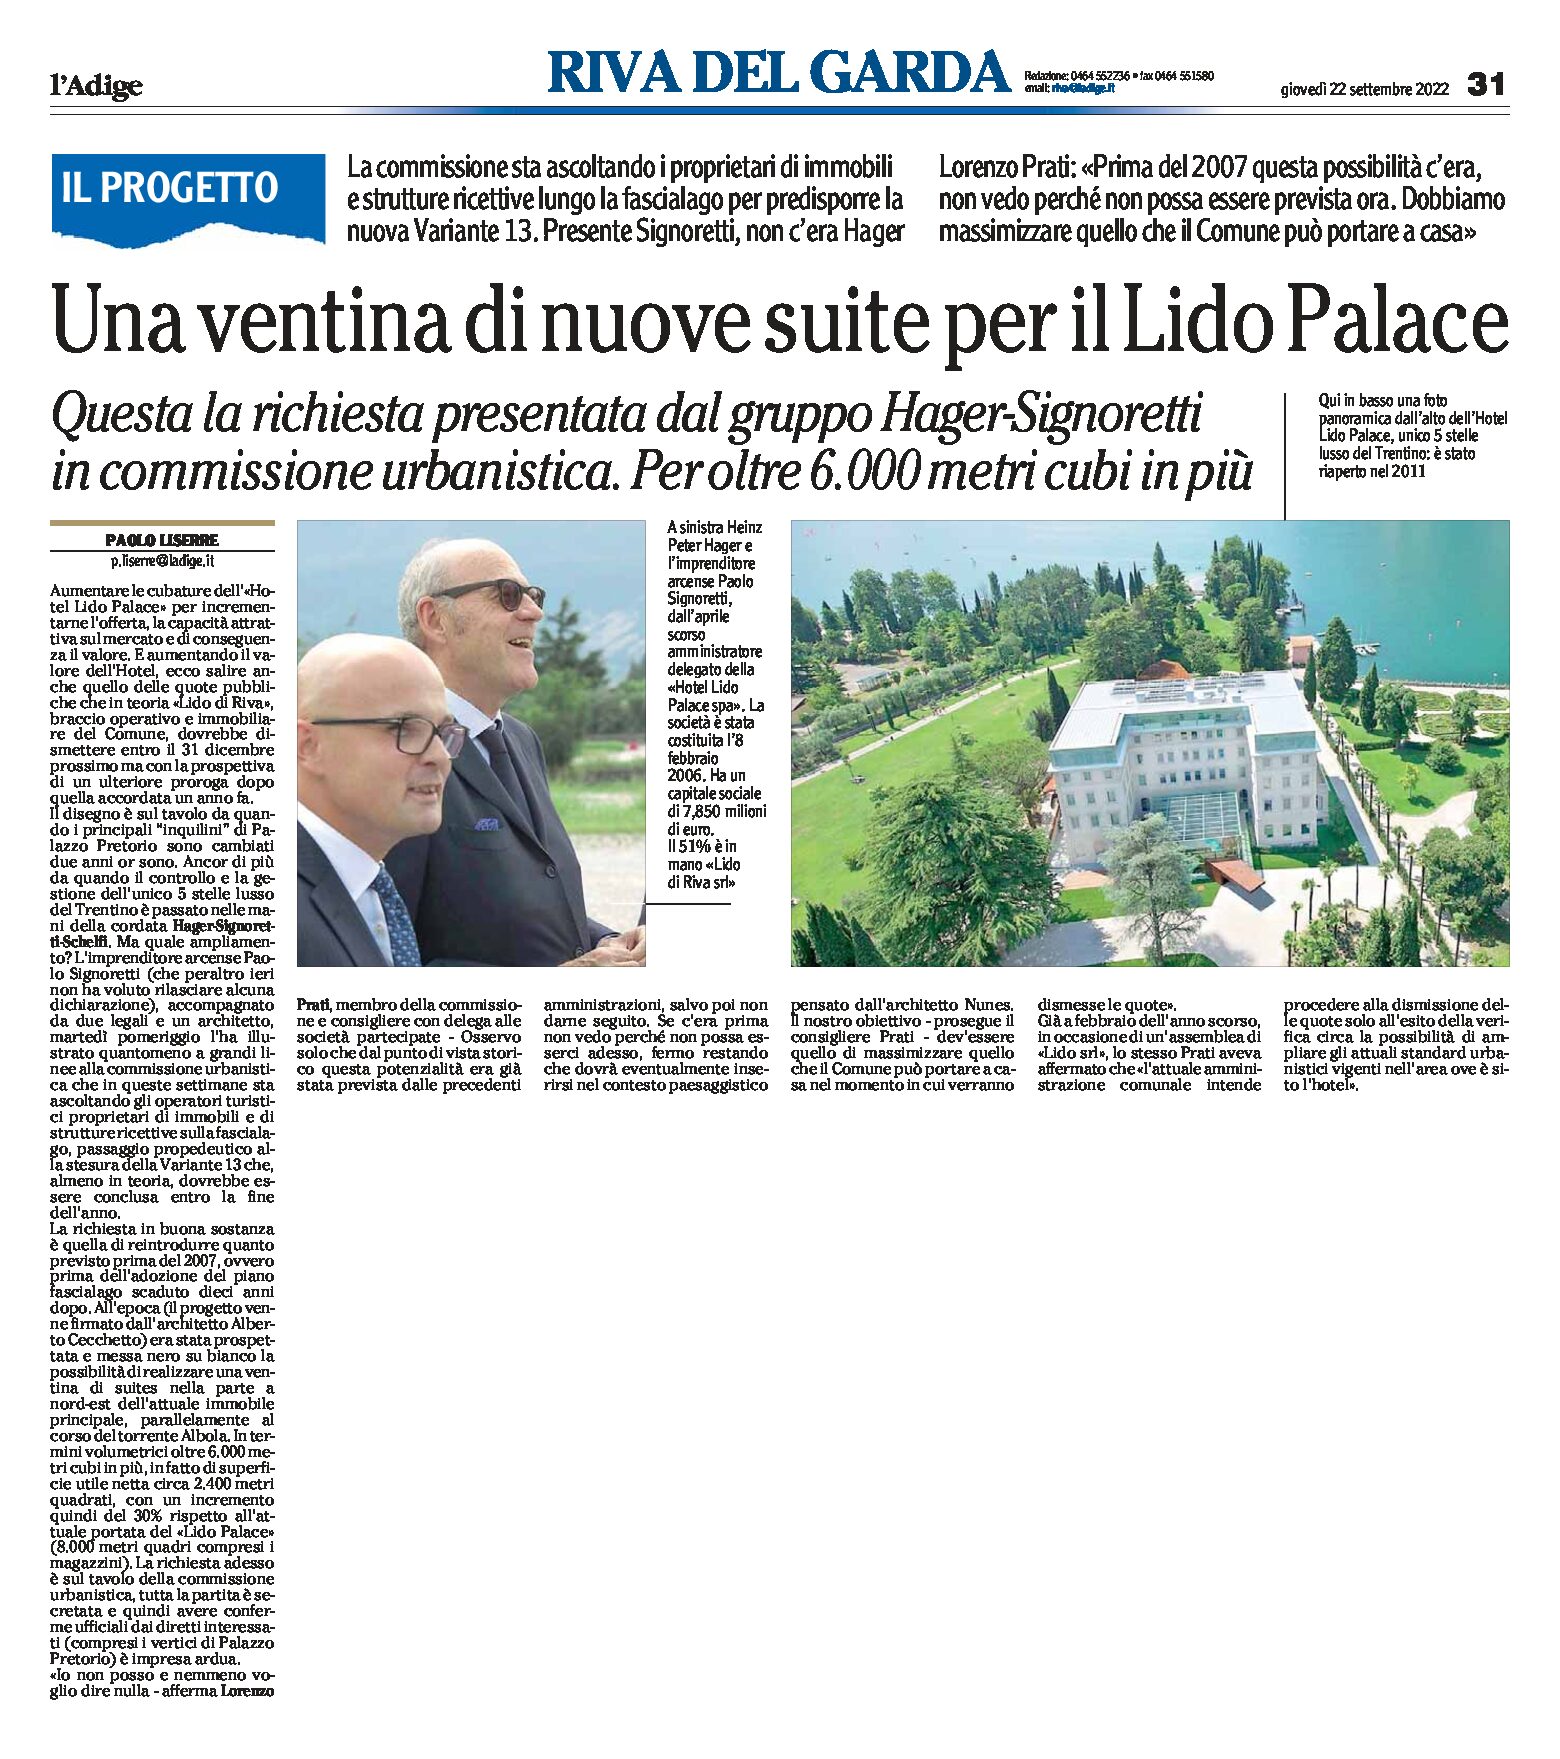 Riva: una ventina di nuove suite per il Lido Palace. Richiesta presentata in commissione urbanistica